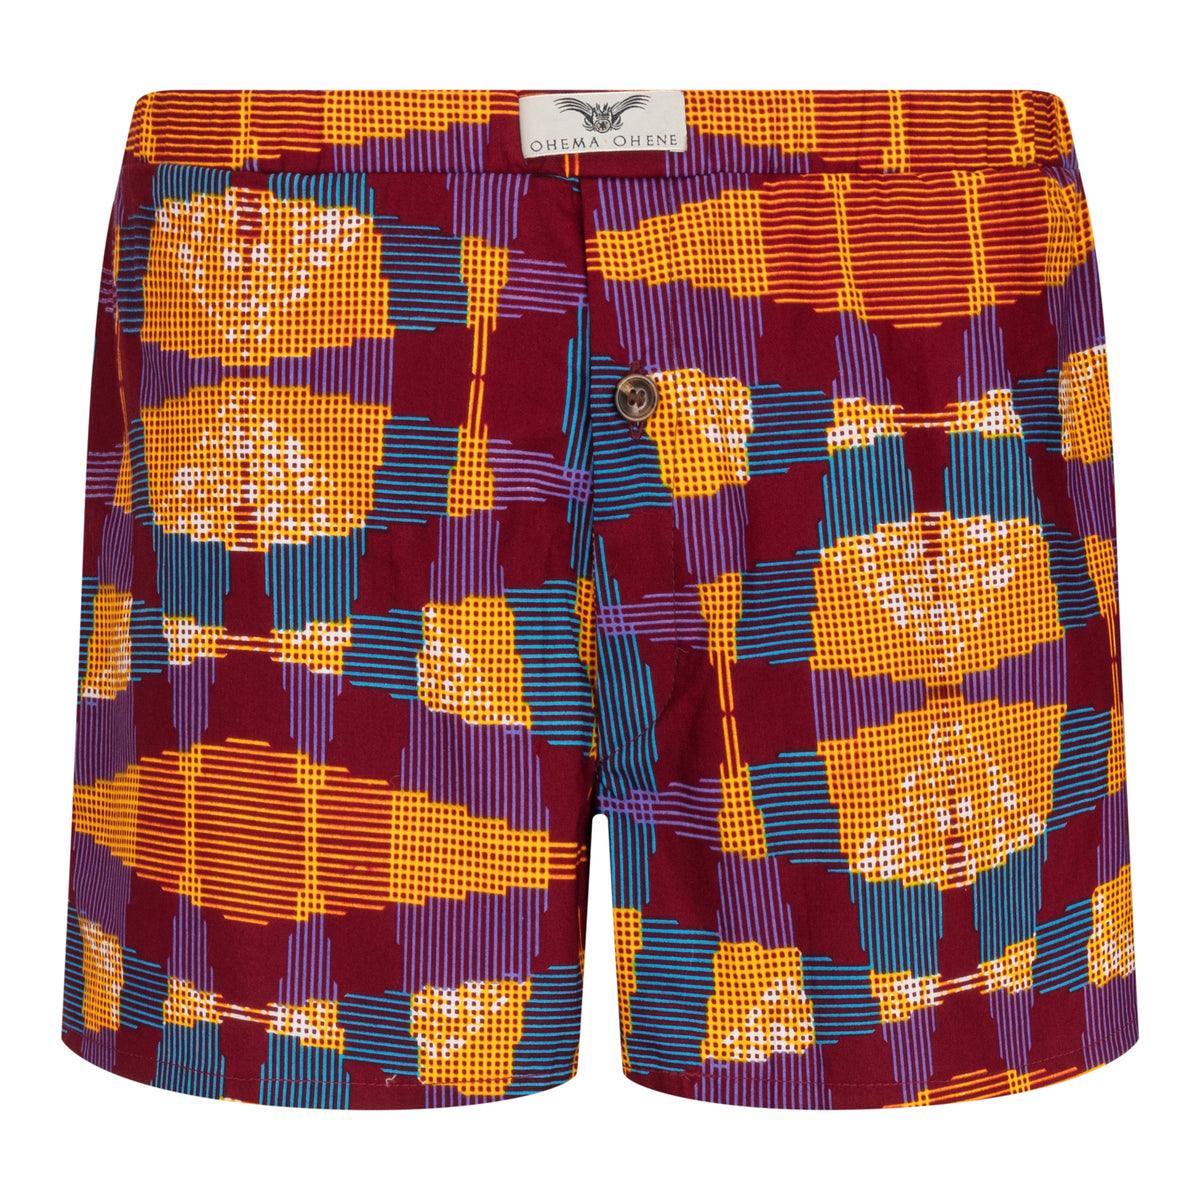 Men's colourful boxer shorts